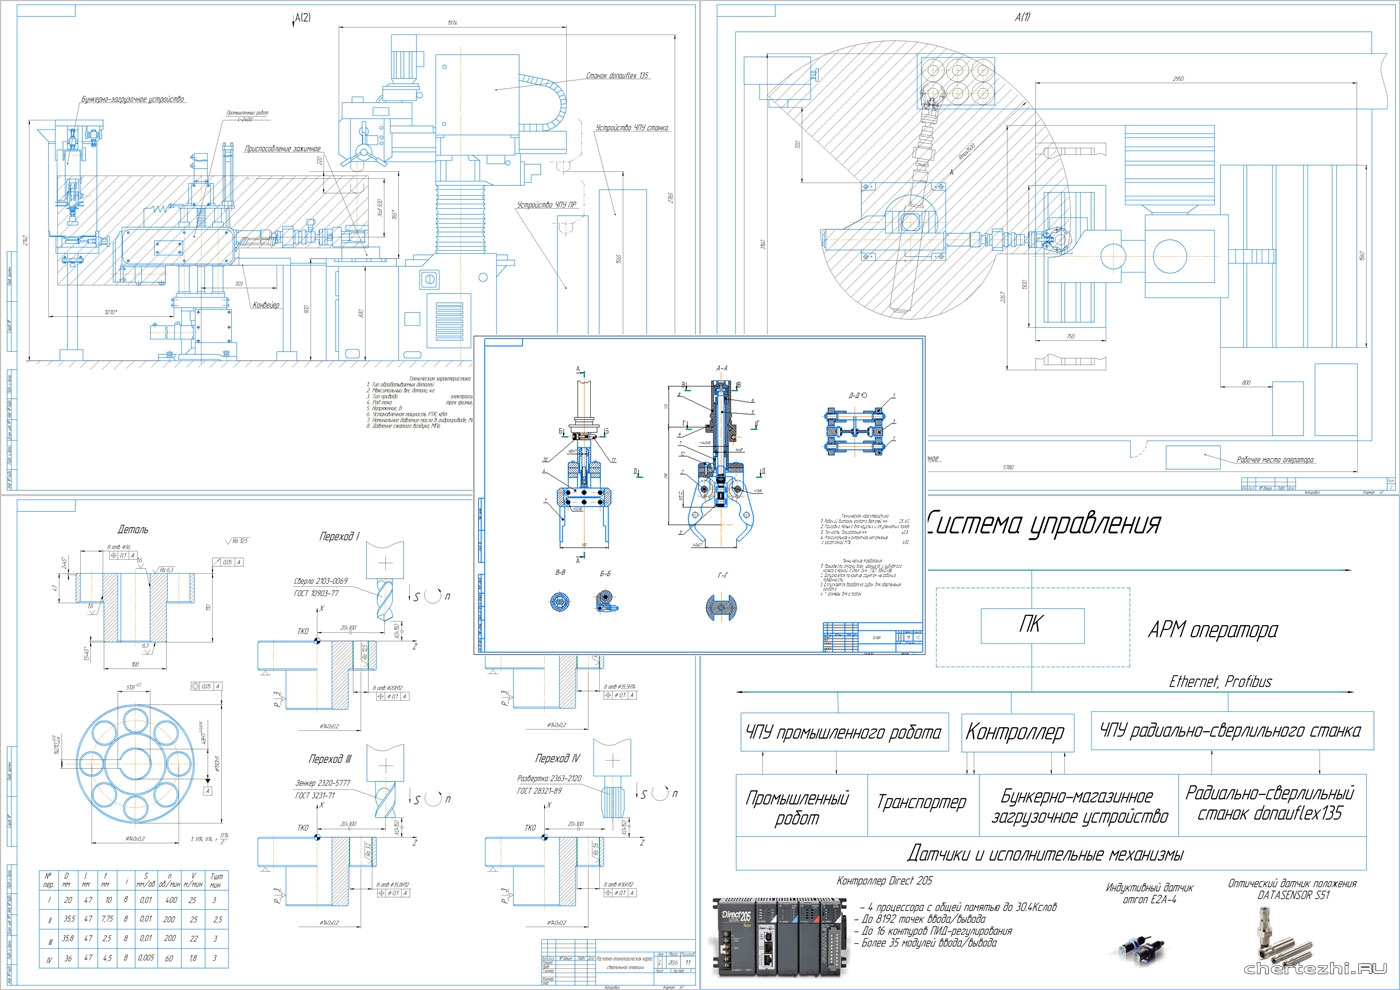 Дипломный проект - Автоматизированный комплекс на базе радиально-сверлильного станка с ЧПУ